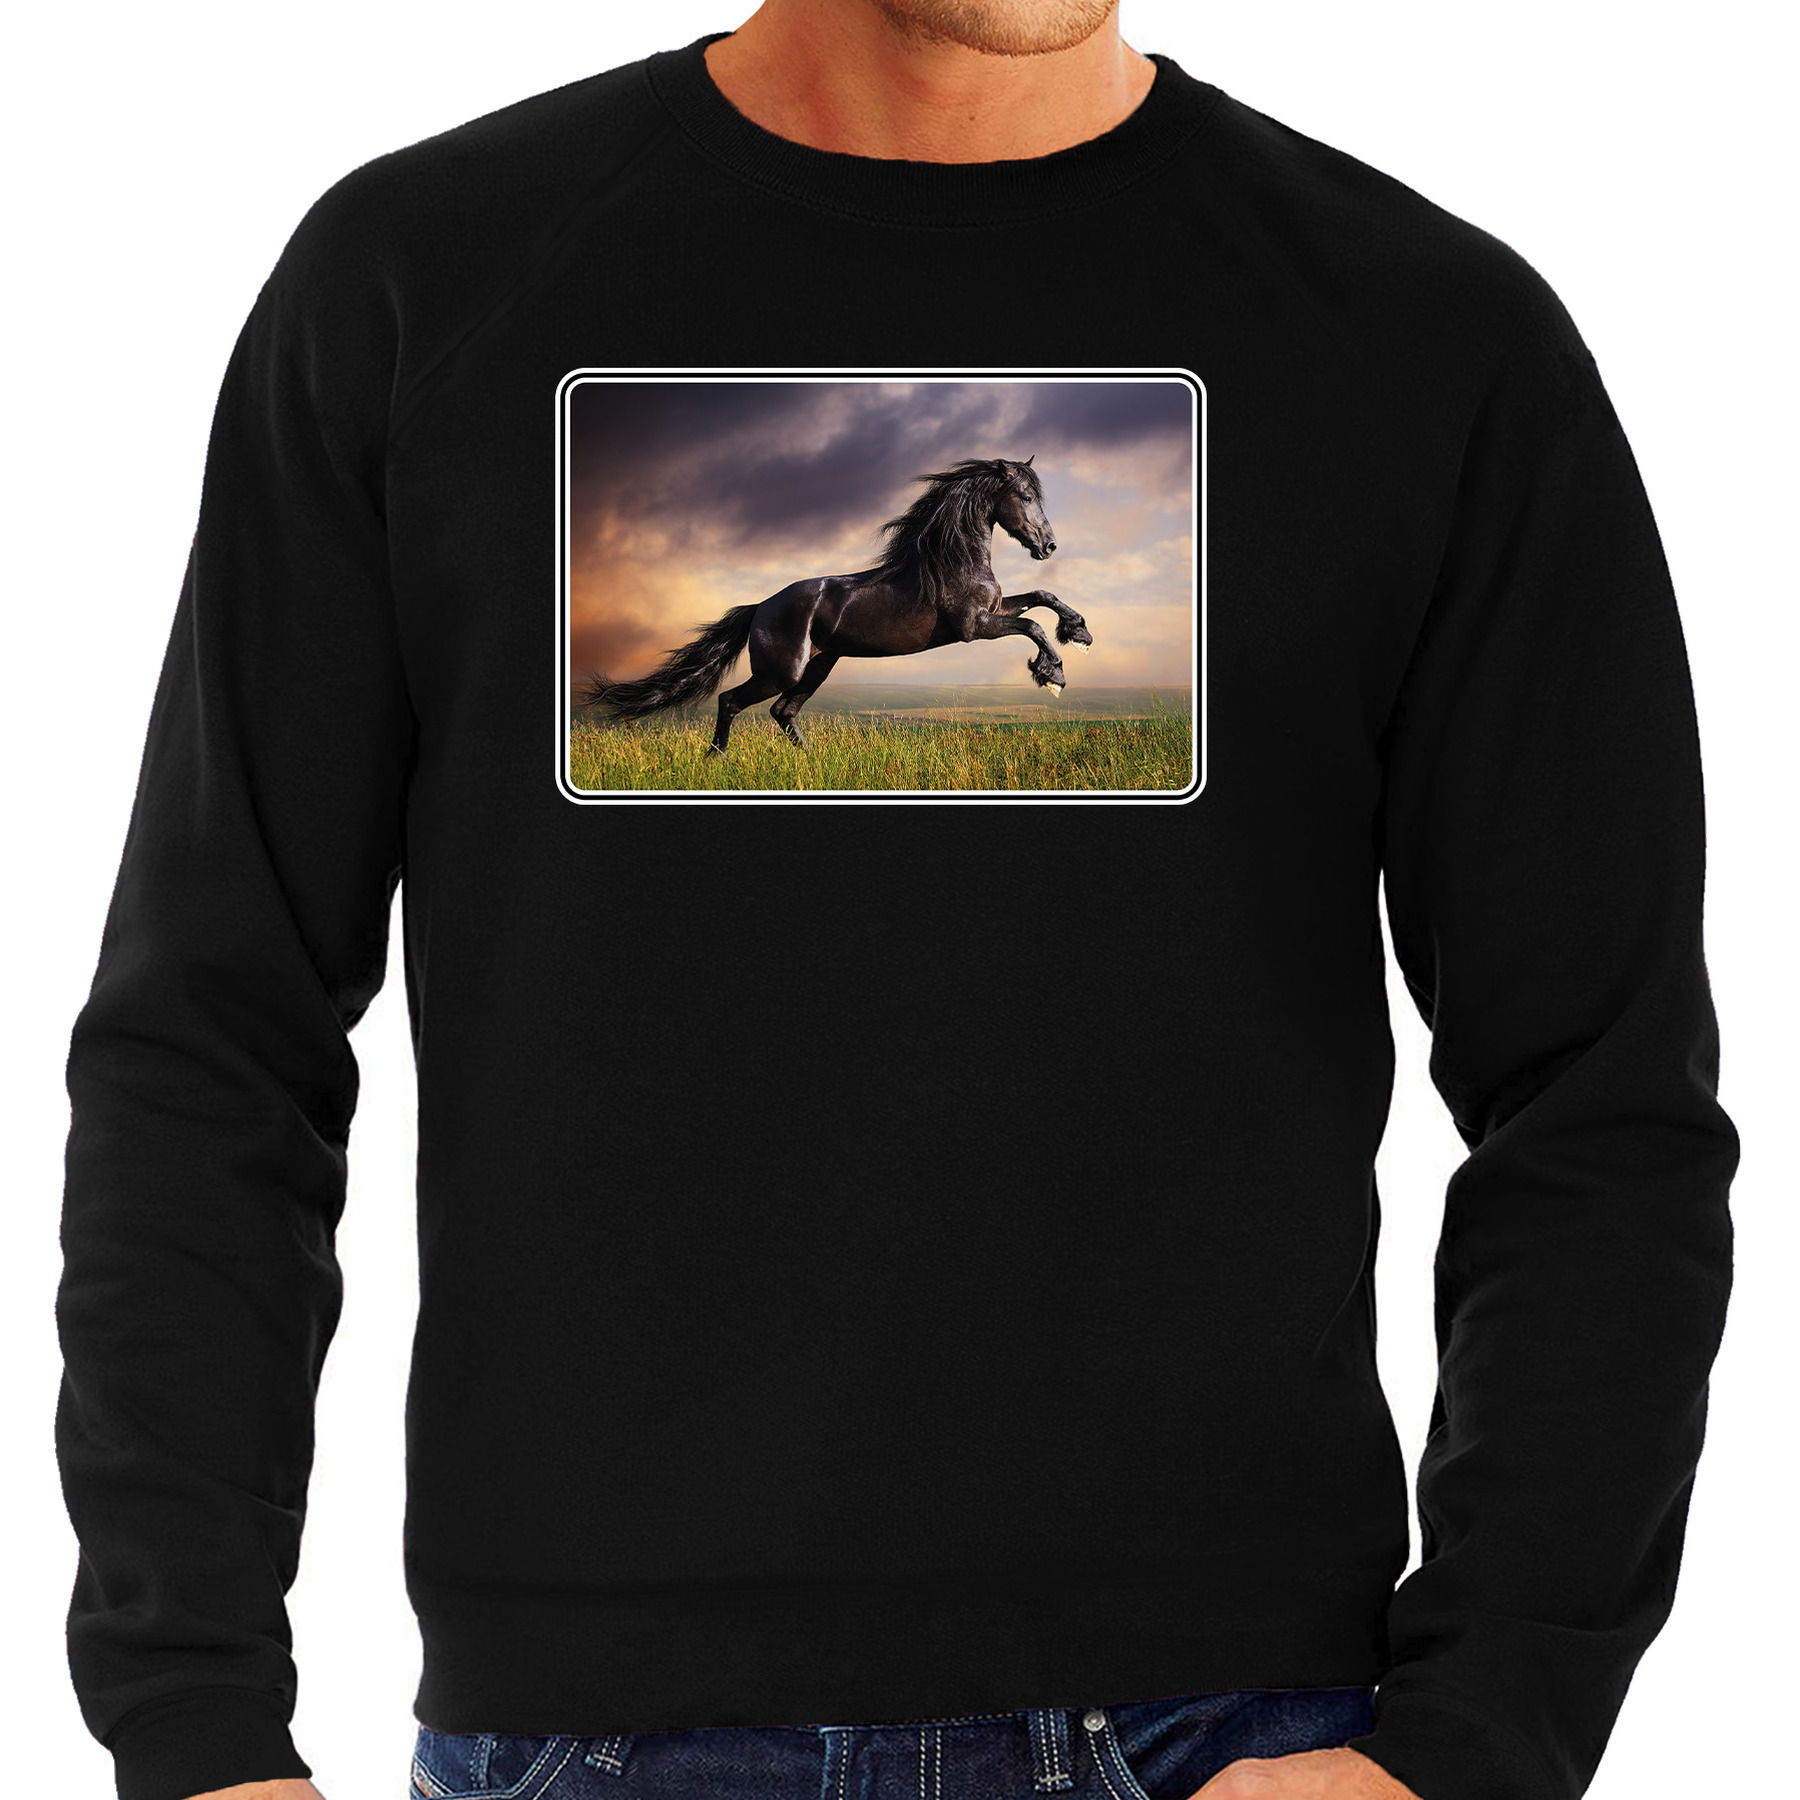 Dieren sweater / trui met paarden foto zwart voor heren